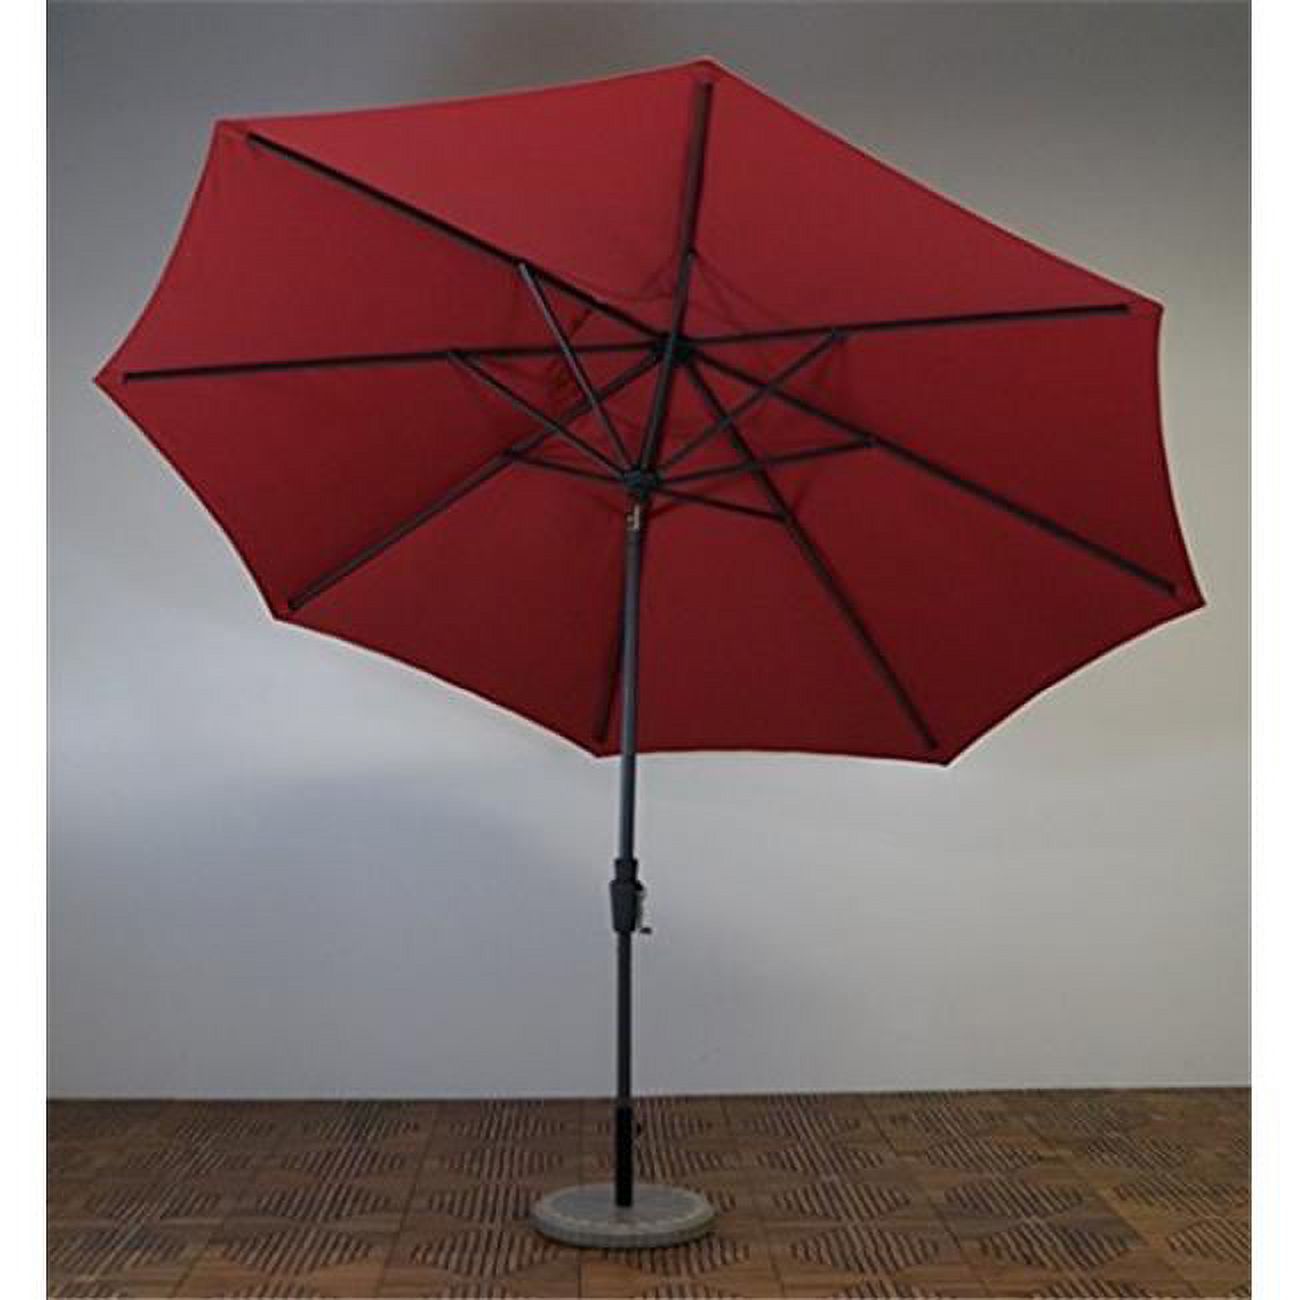 Shade Trends UM11-DU-201 11 ft. x 8 Premium Market Umbrella- Durango Frame- Paprika Canopy - image 1 of 1